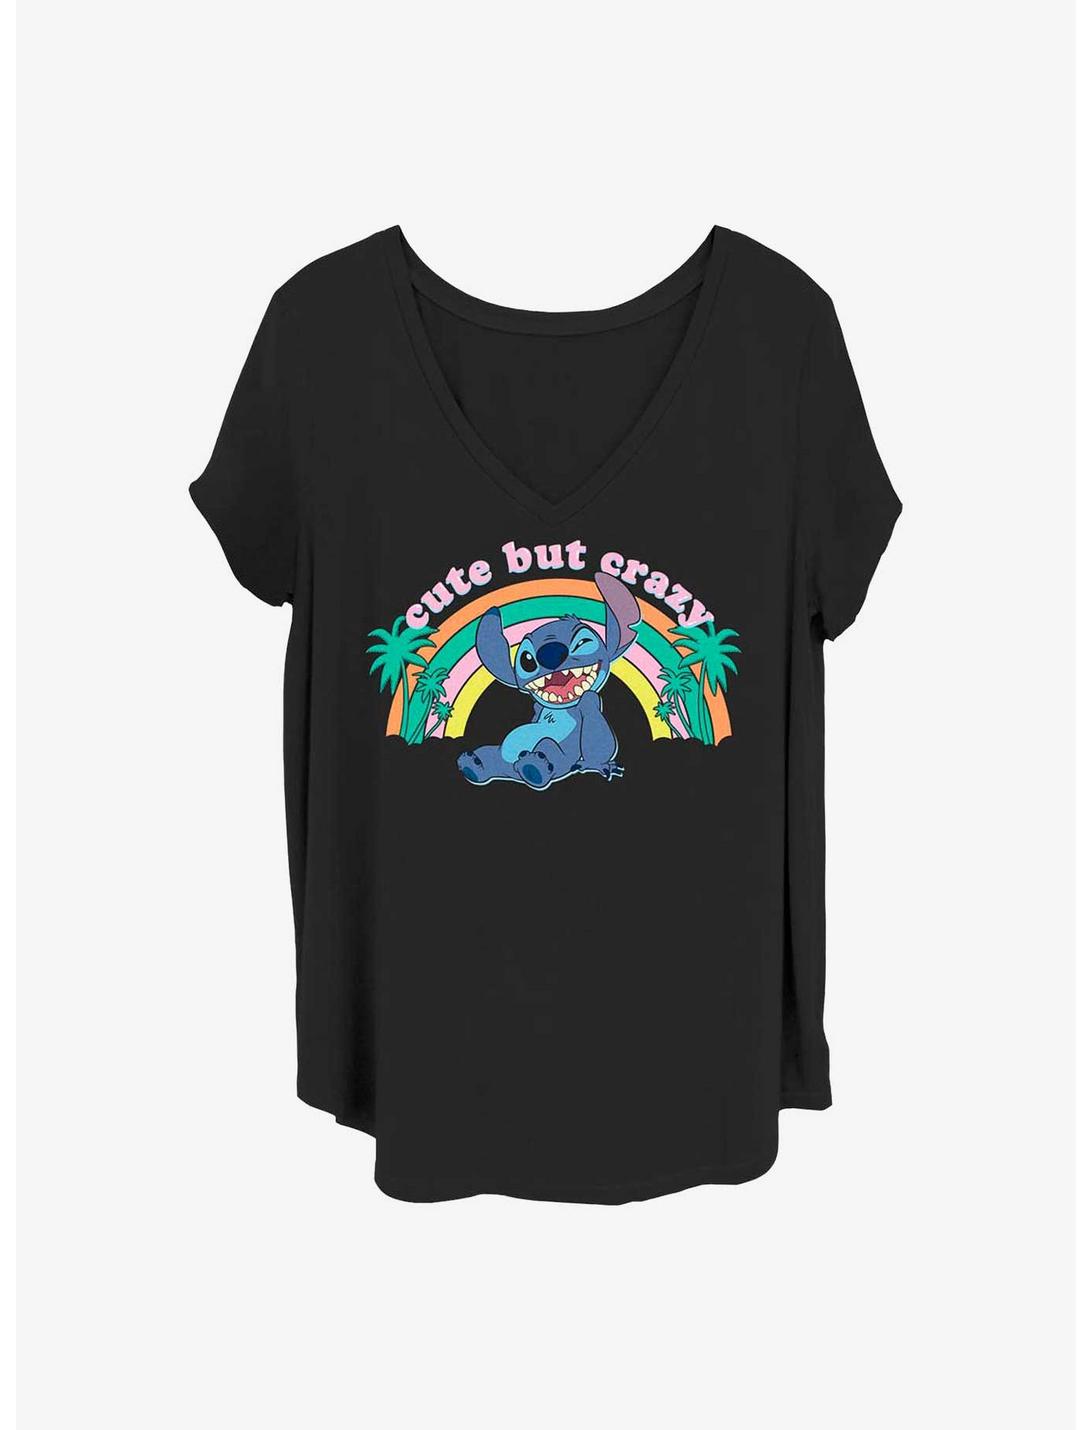 Disney Lilo & Stitch Cute But Crazy Girls T-Shirt Plus Size, BLACK, hi-res